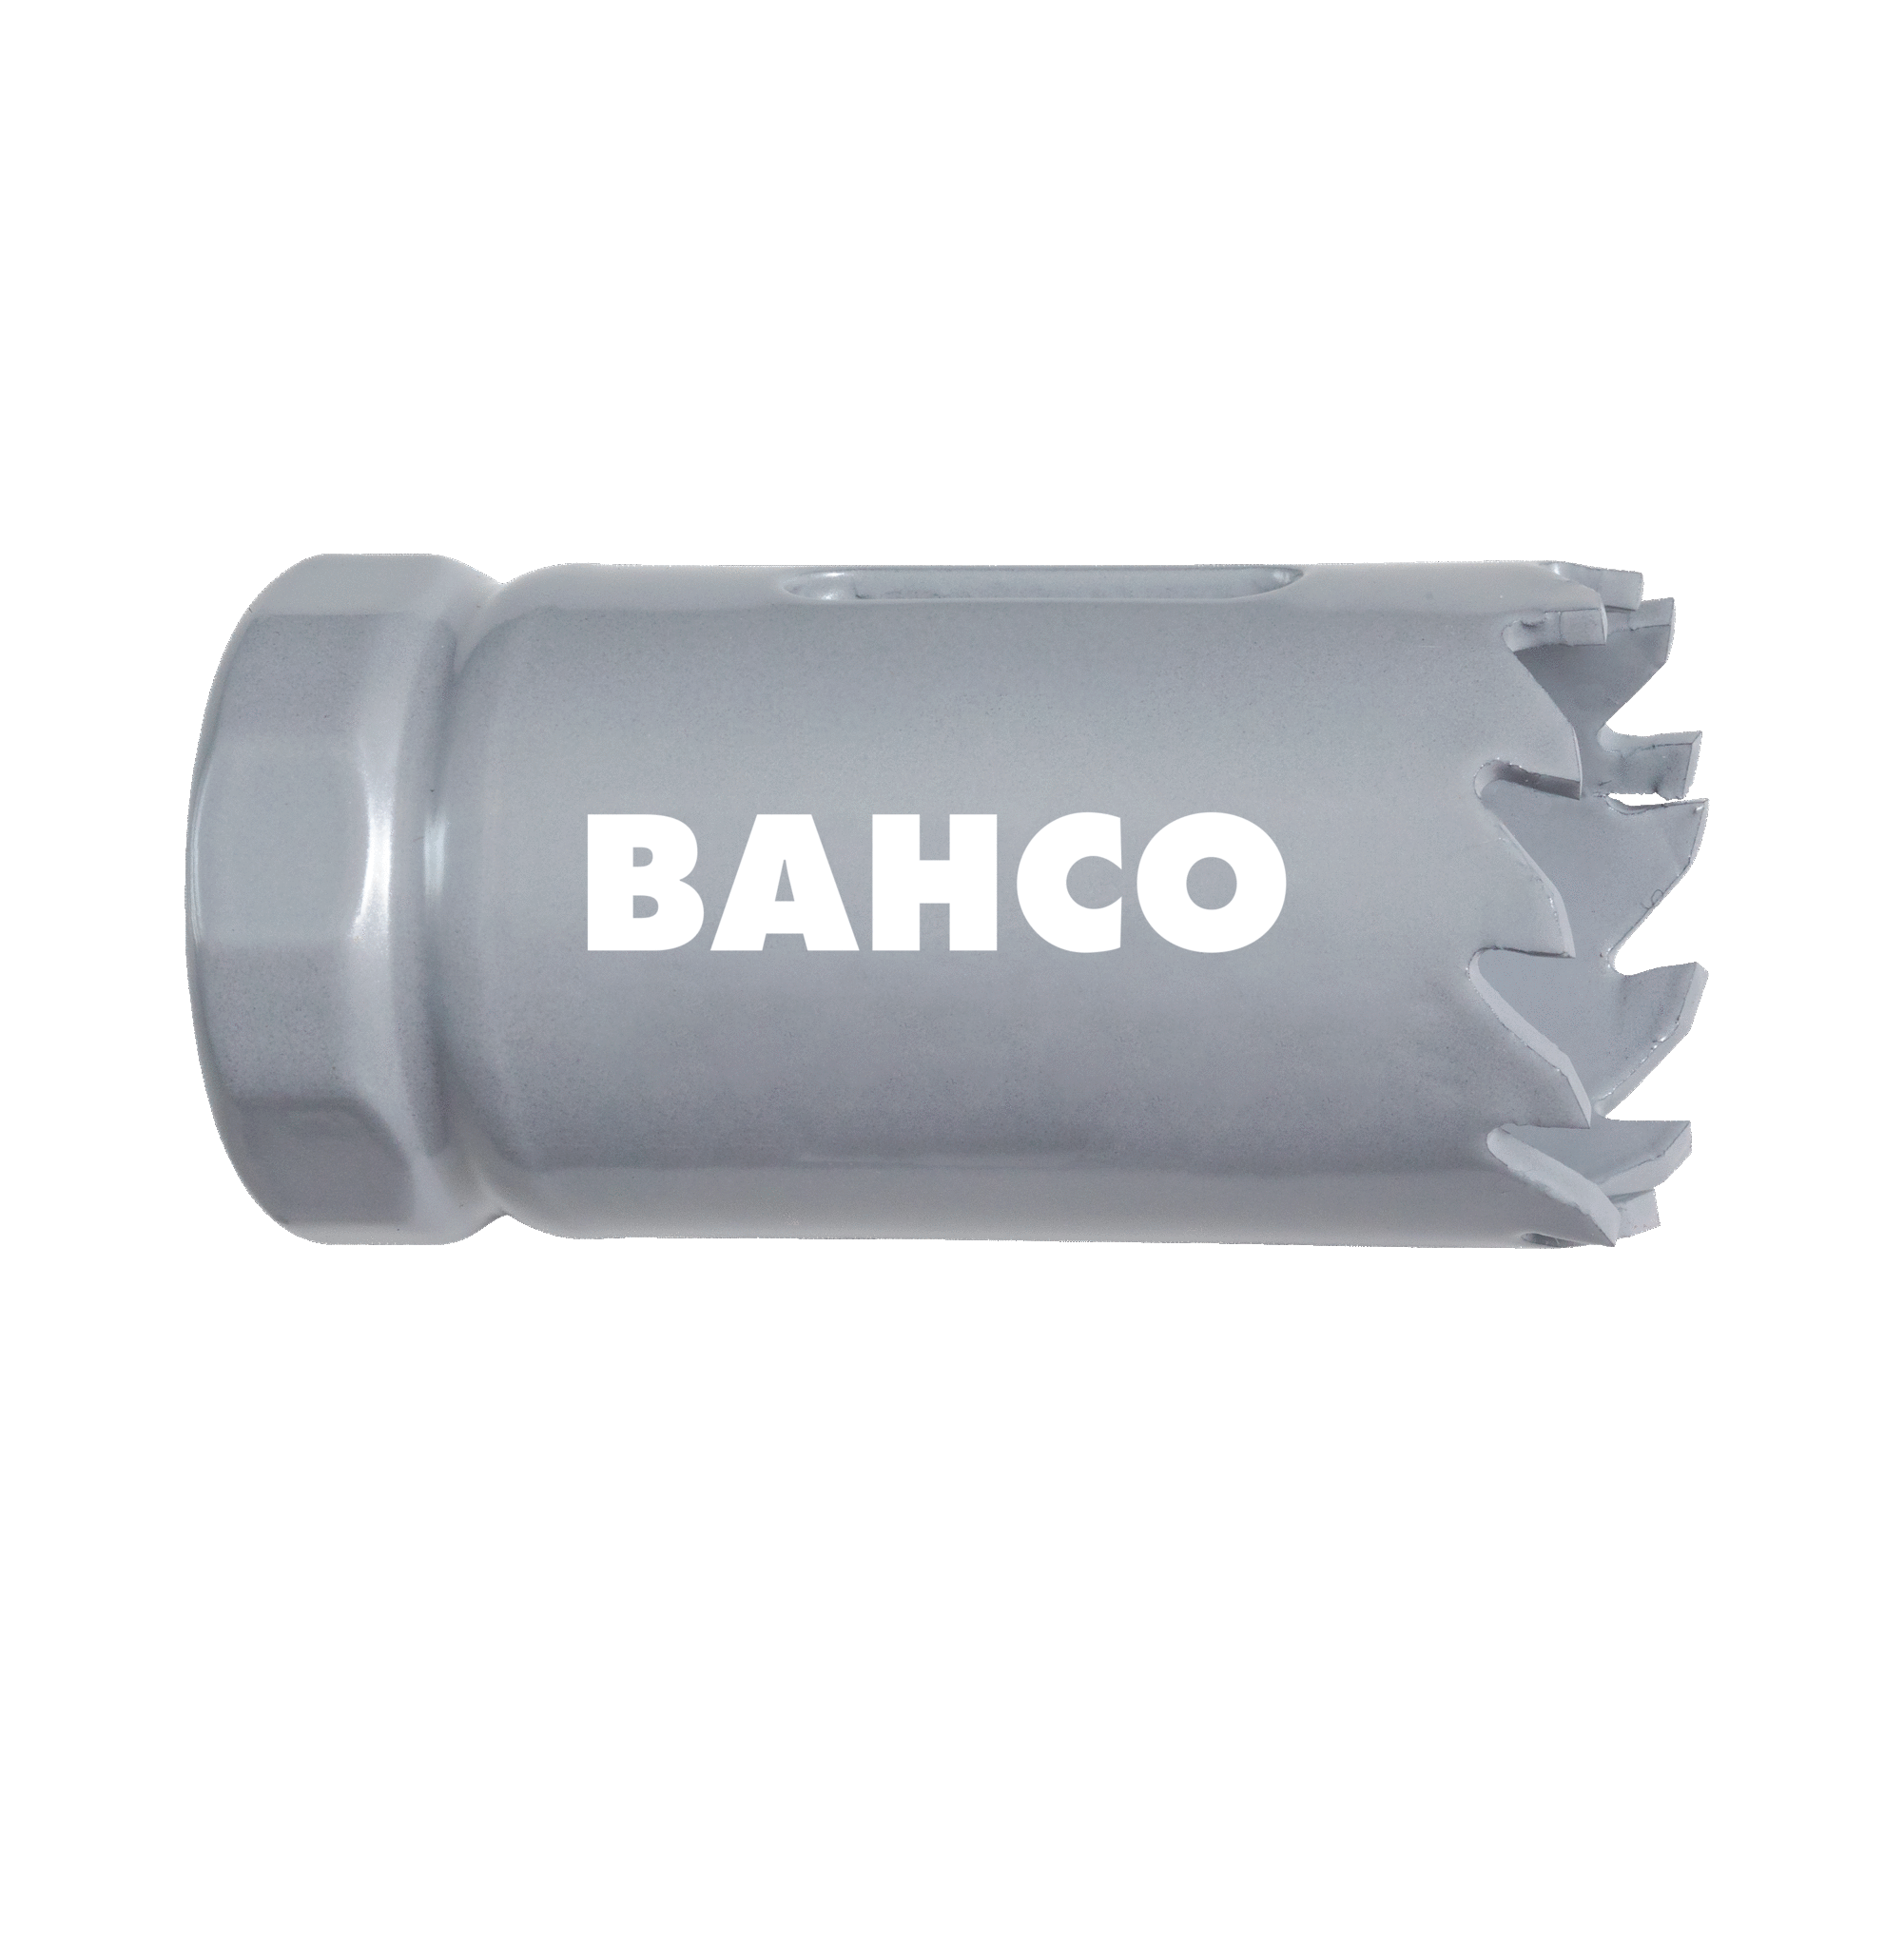 Кольцевые пилы с твердосплавными напайками BAHCO 3832-30